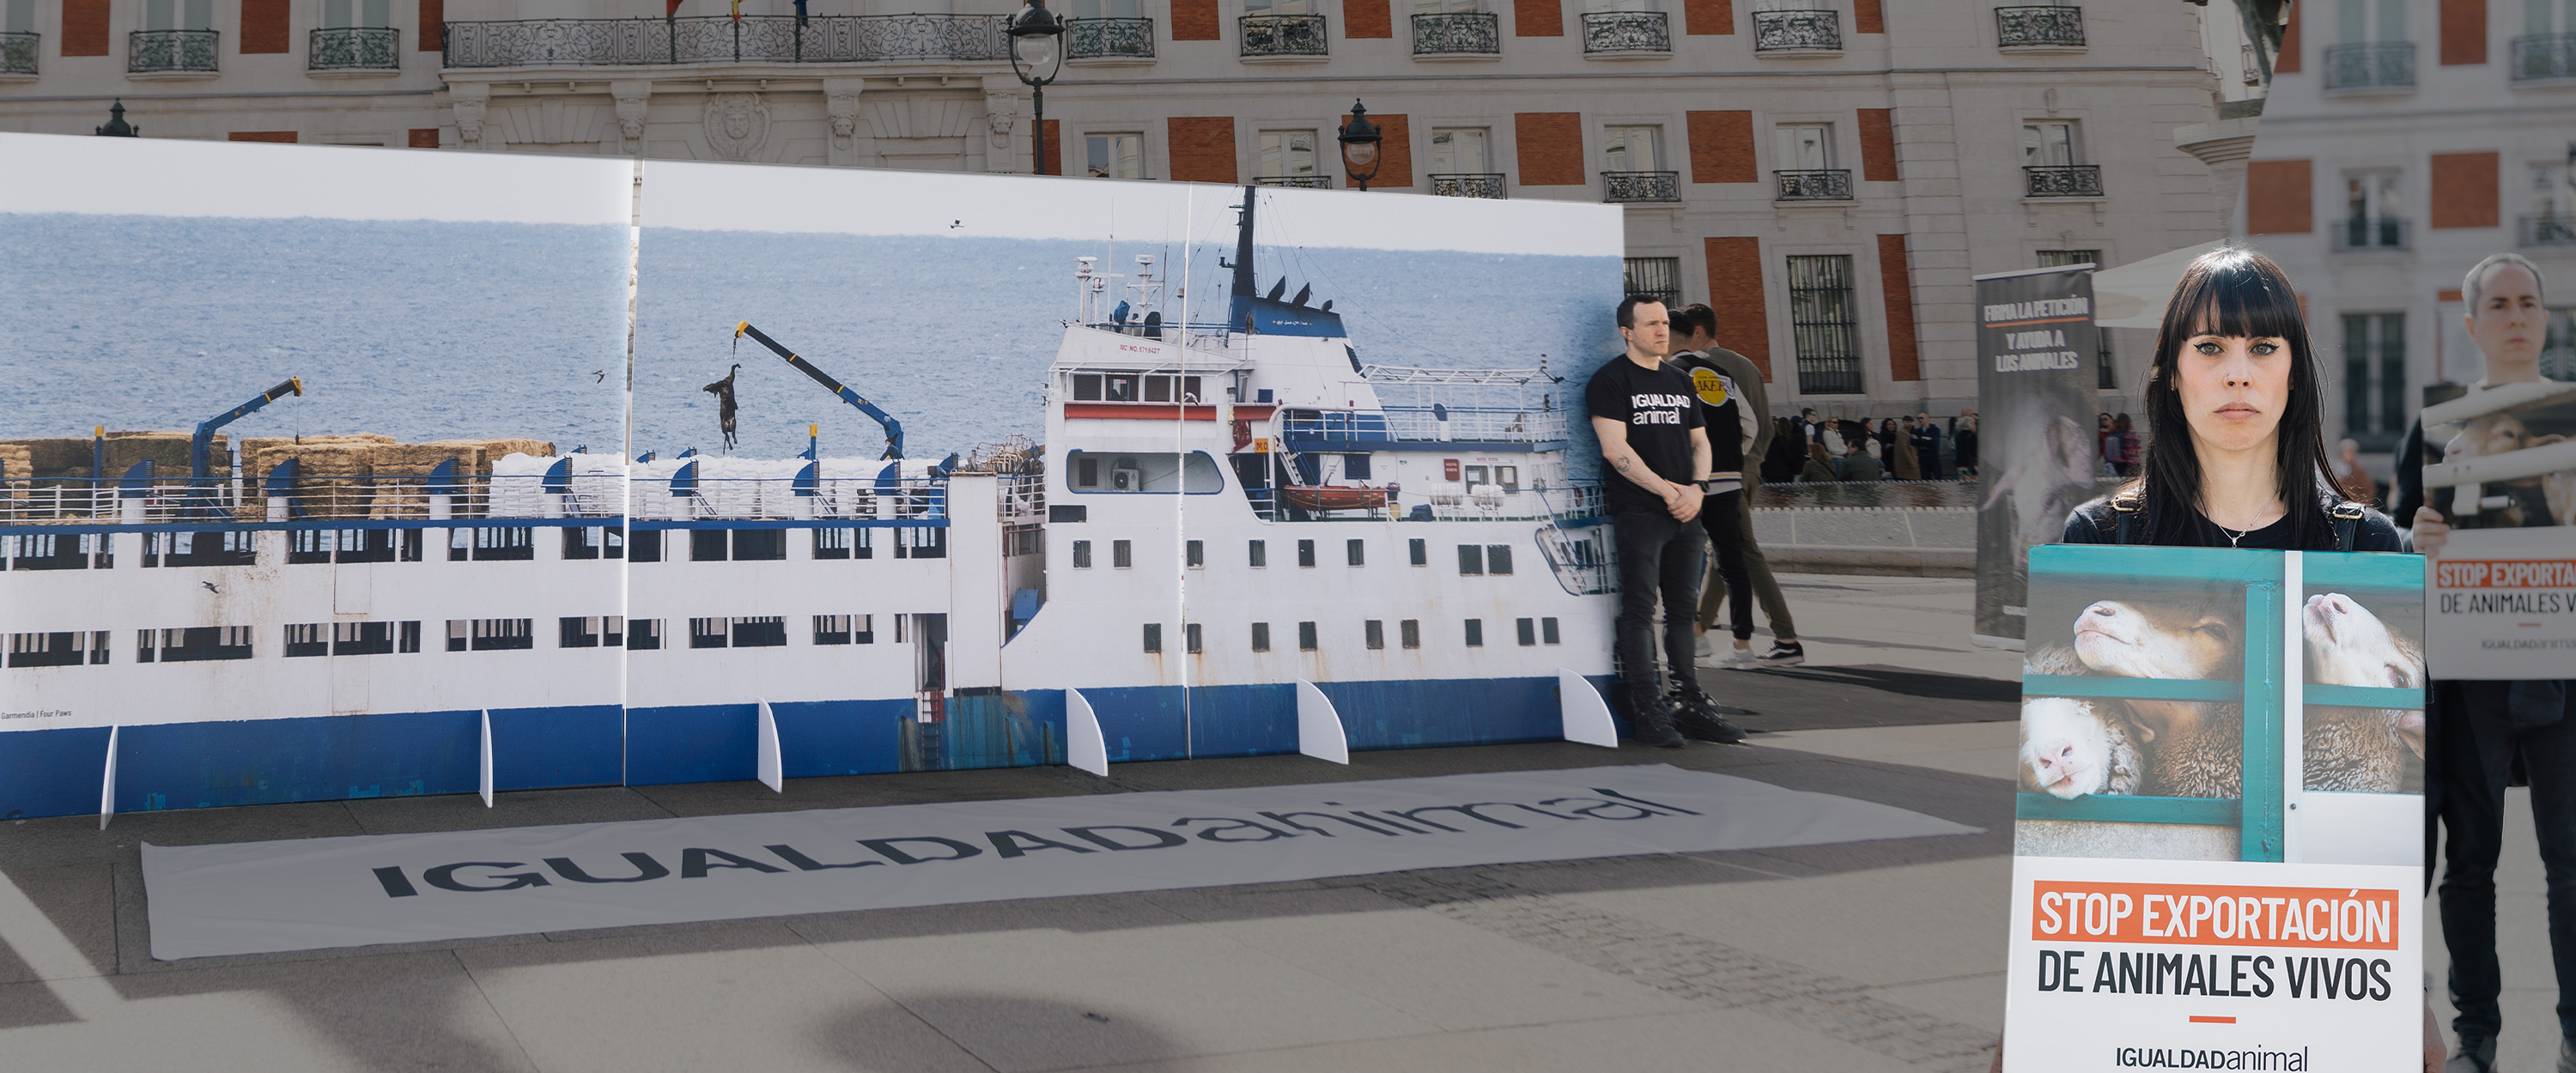 Fotografía de la Puerta del Sol de Madrid con una répicla de un buque que transporta animales vivos. Activista sujetando cartel a un lado. Con degradado en oscuro.